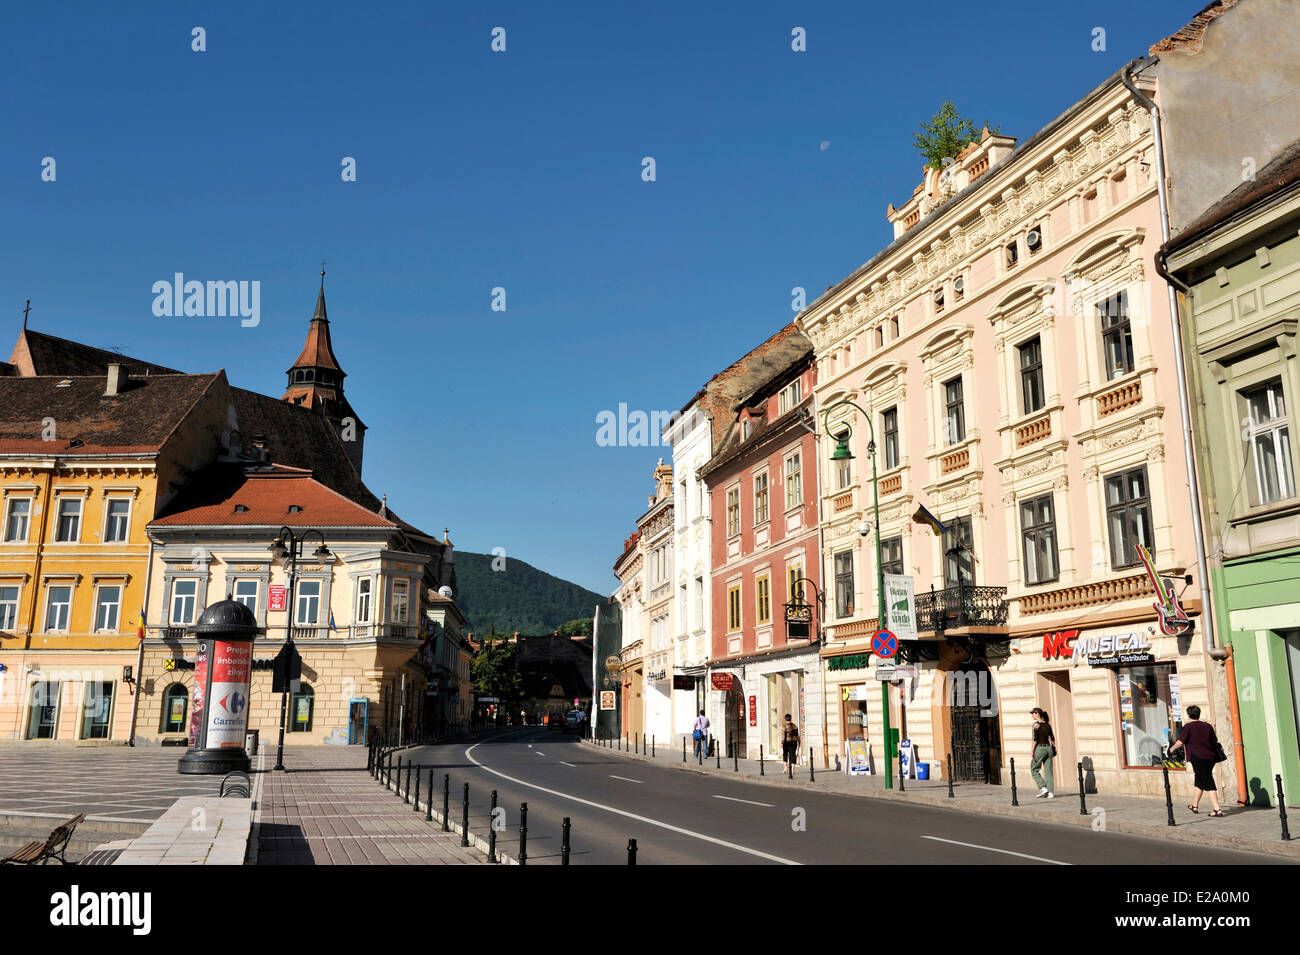 Rumänien, Siebenbürgen, Brasov, Piata Sfatului (Rates Quadrat) mit Biserica Neagra (schwarze Kirche) Stockfoto